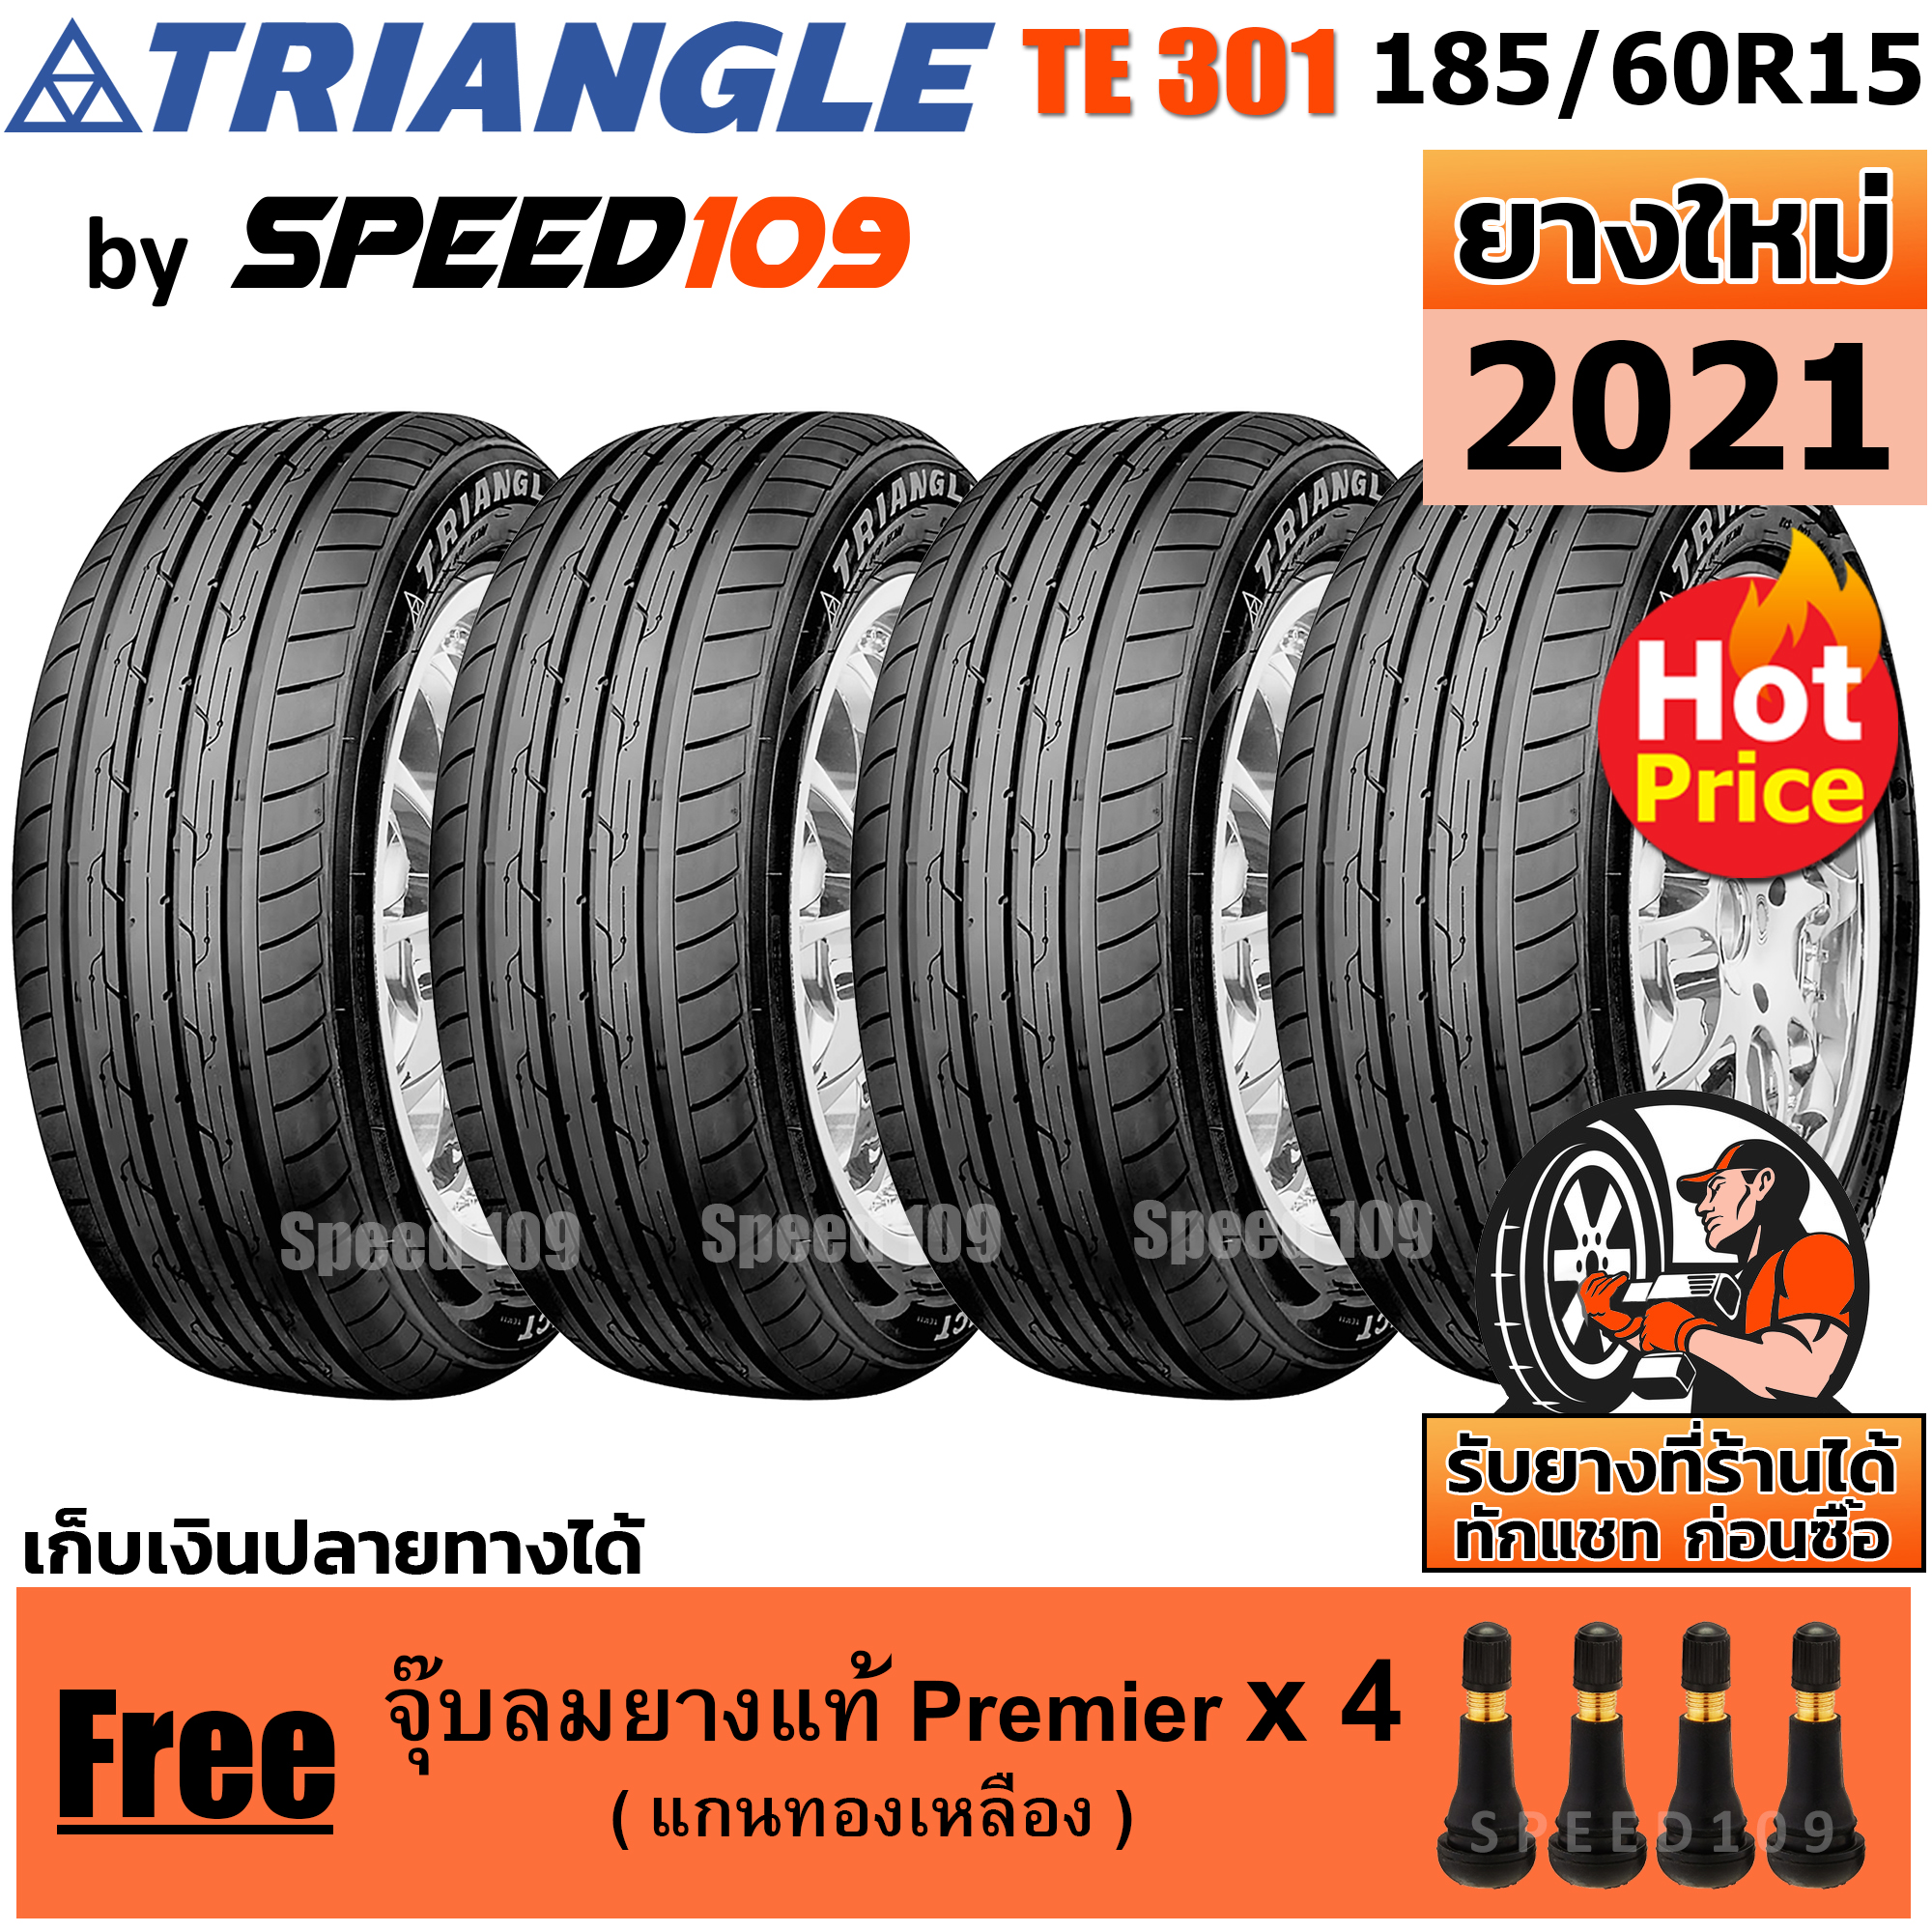 TRIANGLE ยางรถยนต์ ขอบ 15 ขนาด 185/60R15 รุ่น TE301 - 4 เส้น (ปี 2021)